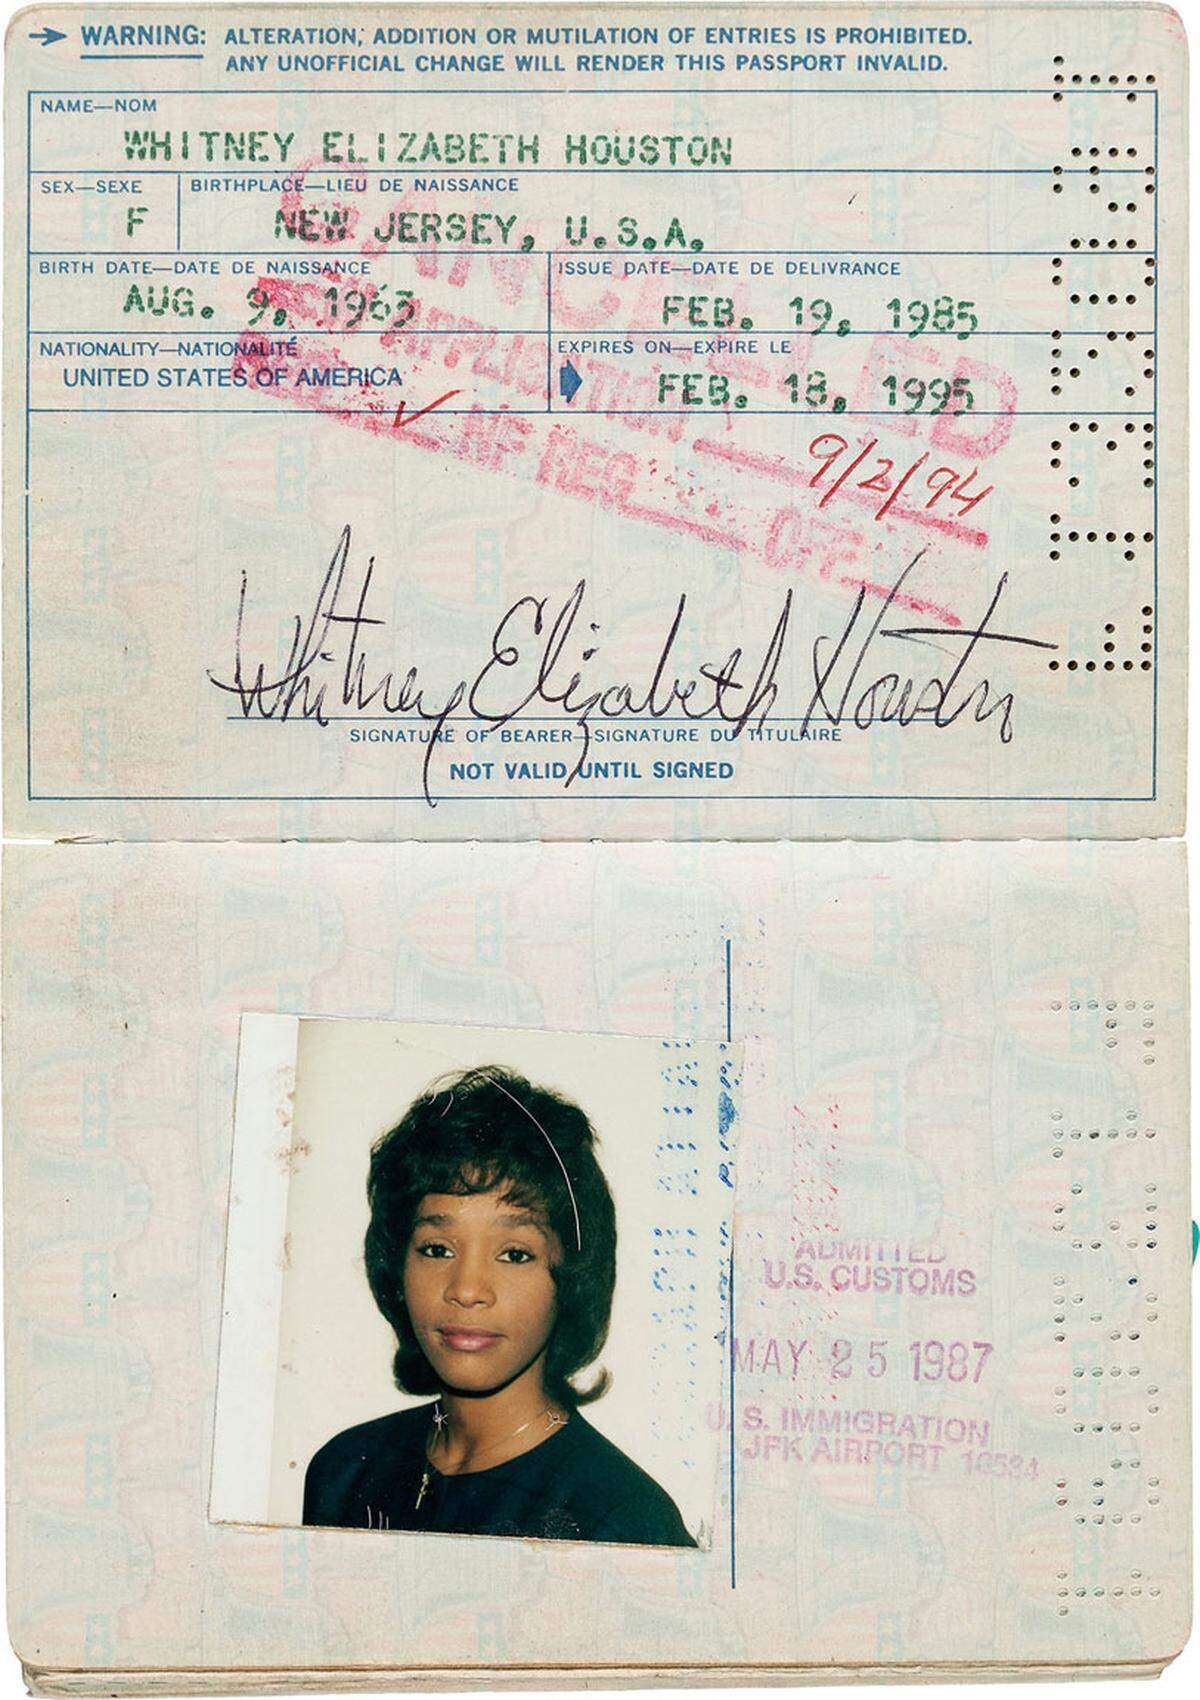 Vor Augen geführt wird dies durch die Reisepässe der Sängerin aus den Jahren 1985 und 2007, die ebenfalls verkauft werden sollen: Das Passbild im ersteren zeigt eine strahlende jugendliche Houston, auf dem späteren Bild ist ihr Gesicht bereits gezeichnet.  